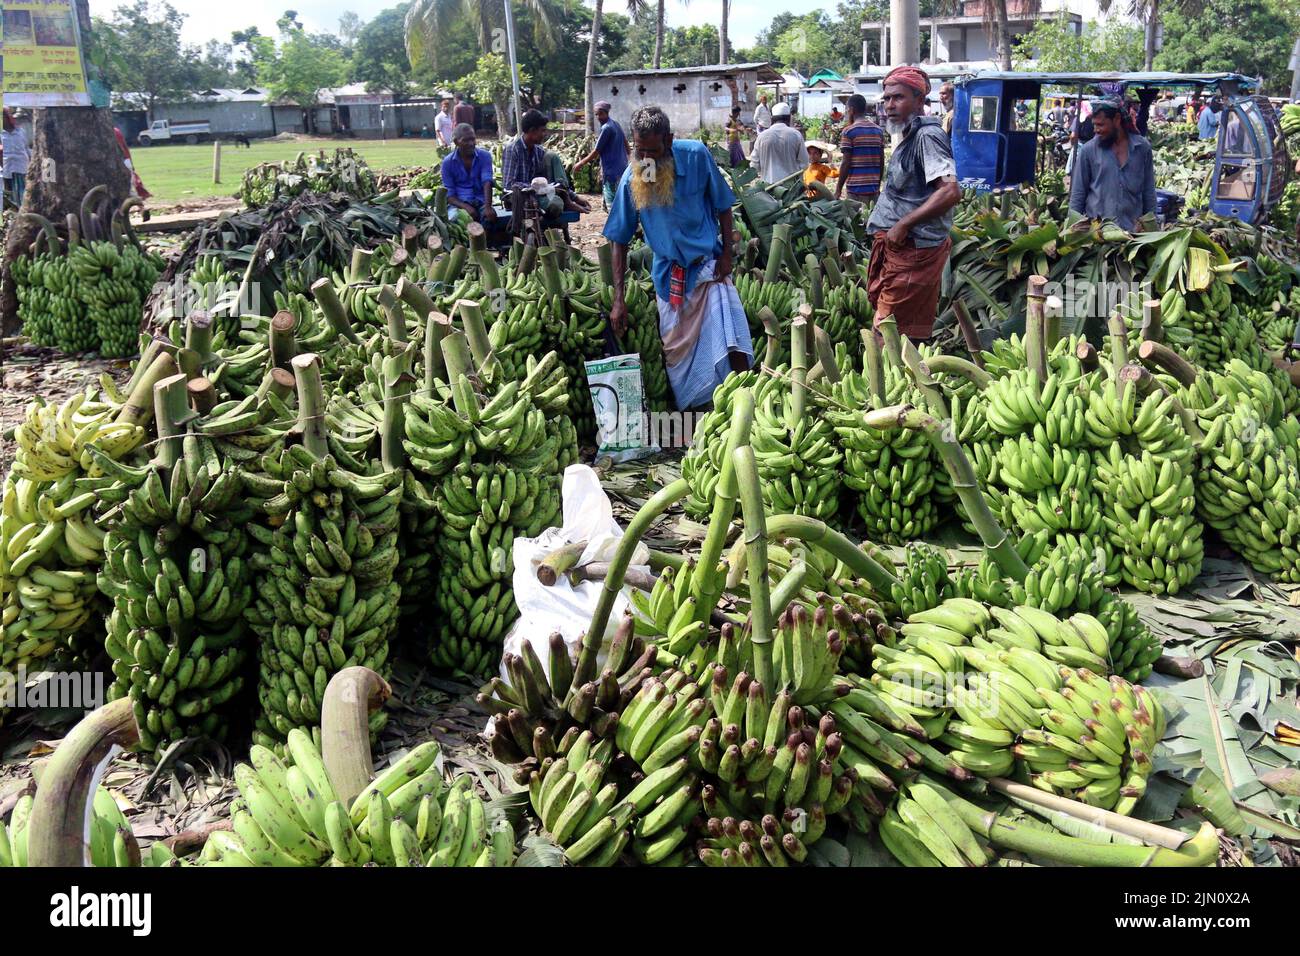 Der größte traditionelle Bananenmarkt in Bangladesch im Madhupur des Bezirks Tangail. Bauern verkaufen diese beliebten Früchte direkt an Großhändler. Bananen im Wert von 8 Lakhs bis 10 Lakhs werden täglich verkauft. 05. August 2022. Foto von Habibur Rahman/ABACAPRESS.COM Stockfoto